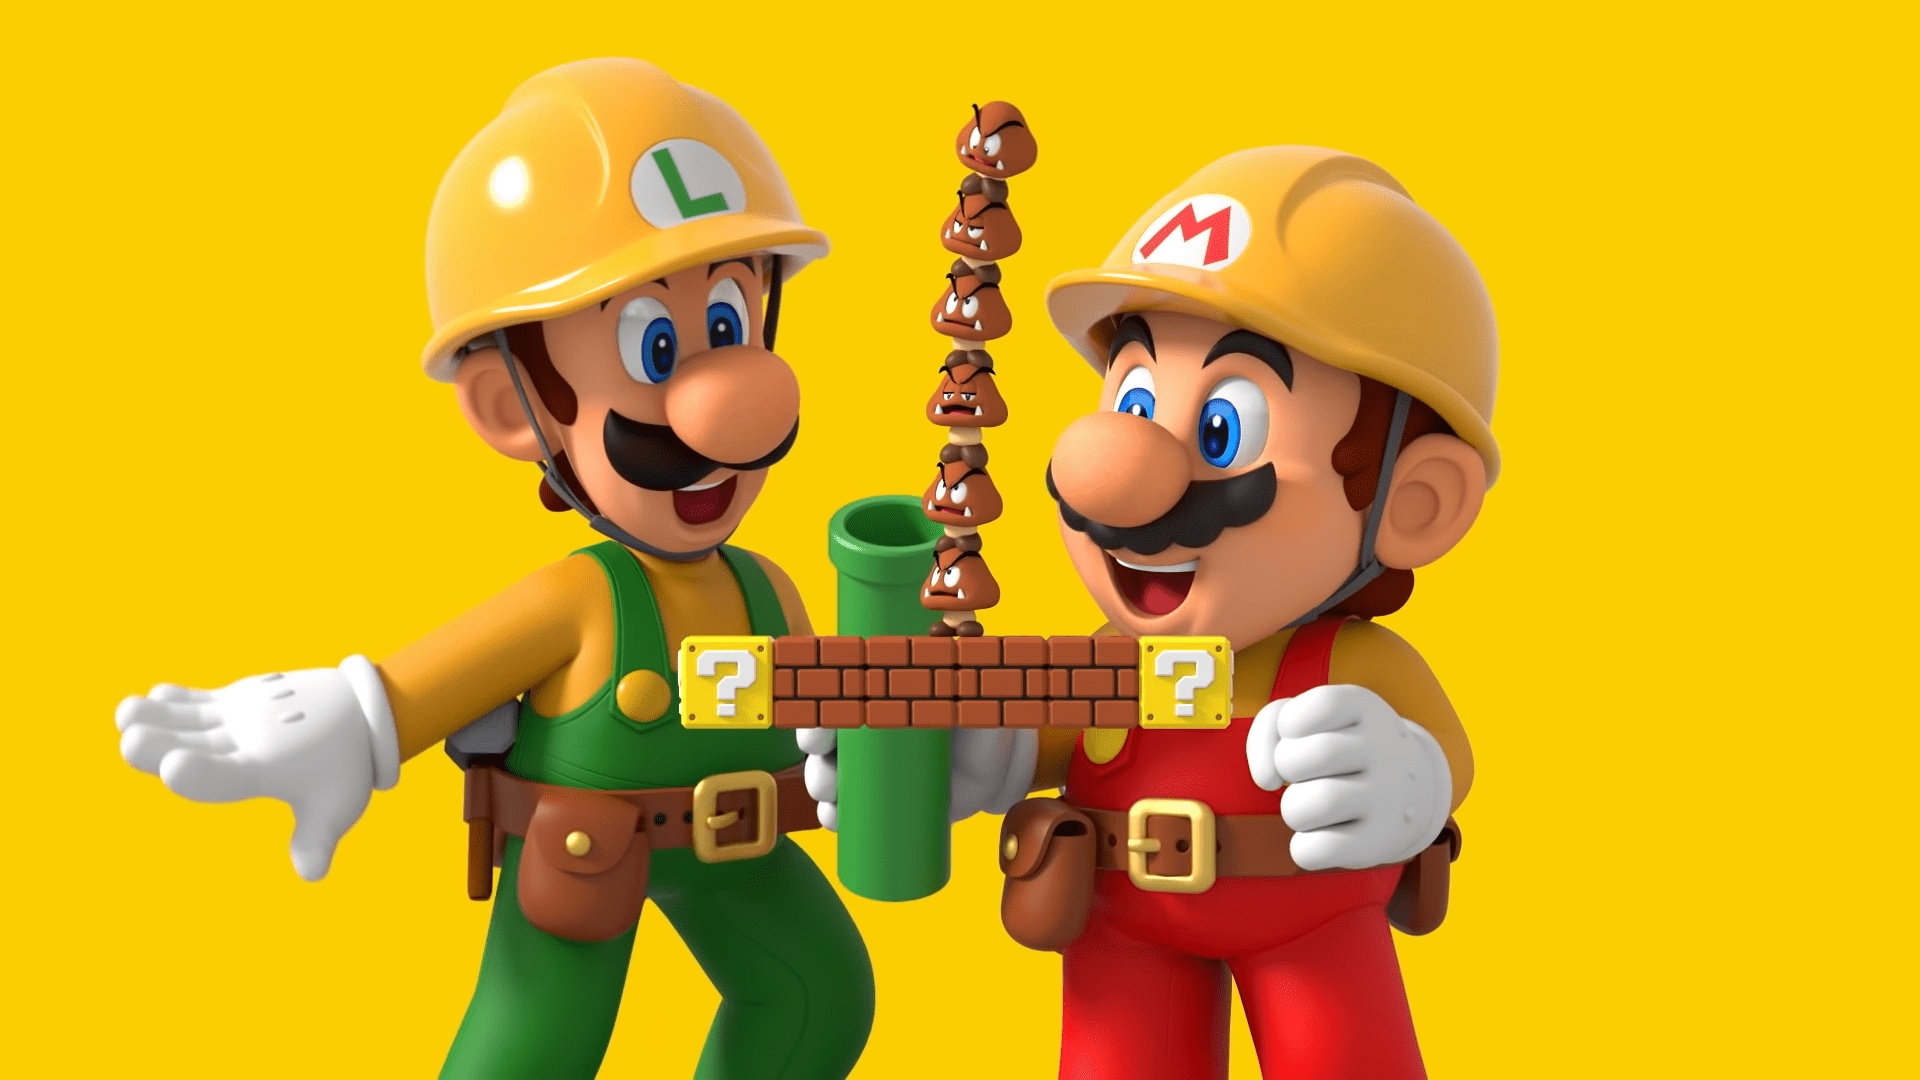 Английская розница: Super Mario Maker 2 удерживает лидерство